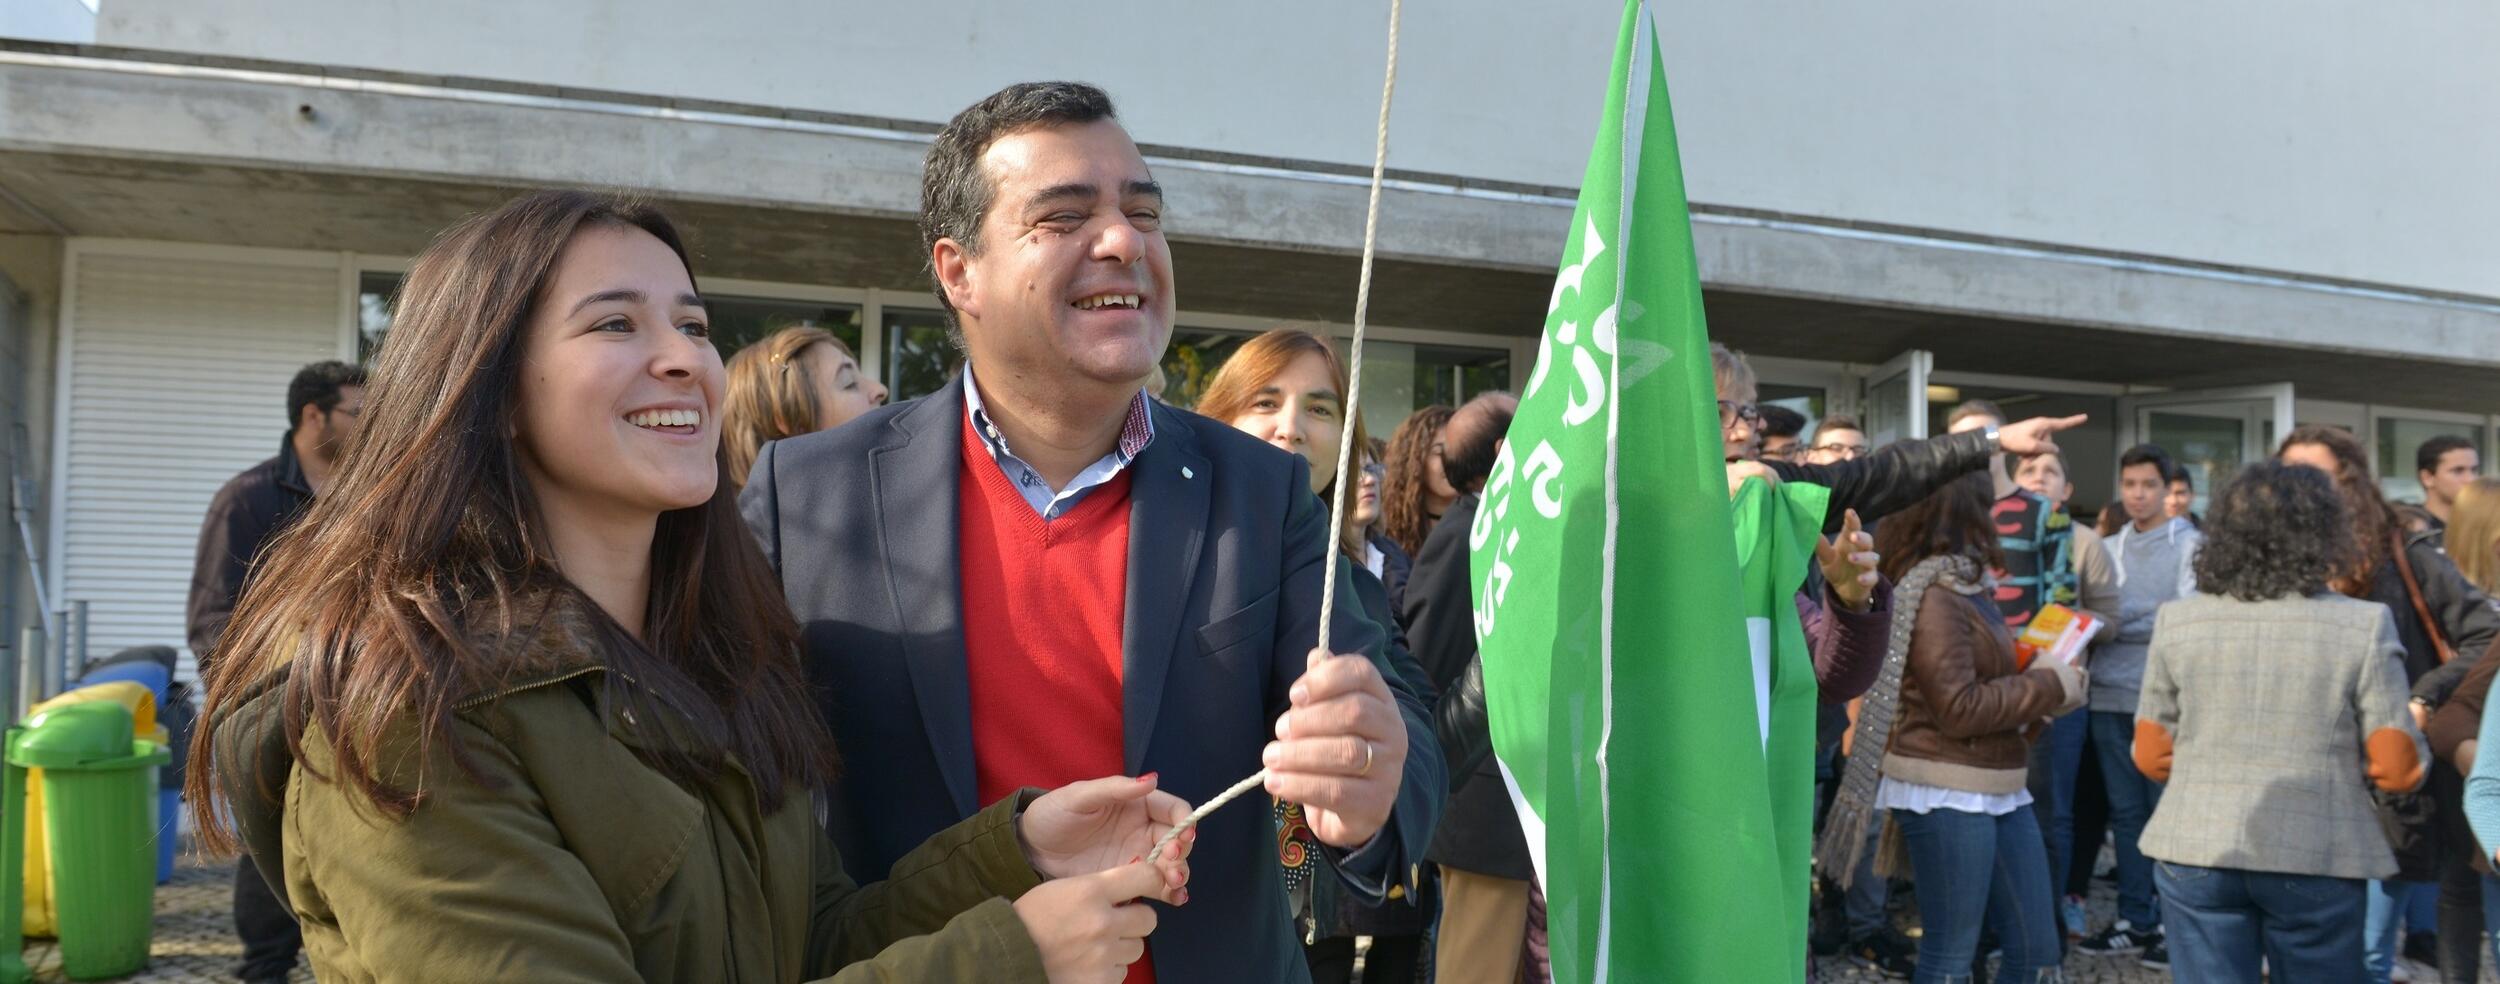 Escola Jorge Peixinho com Bandeira Verde Eco-Escolas